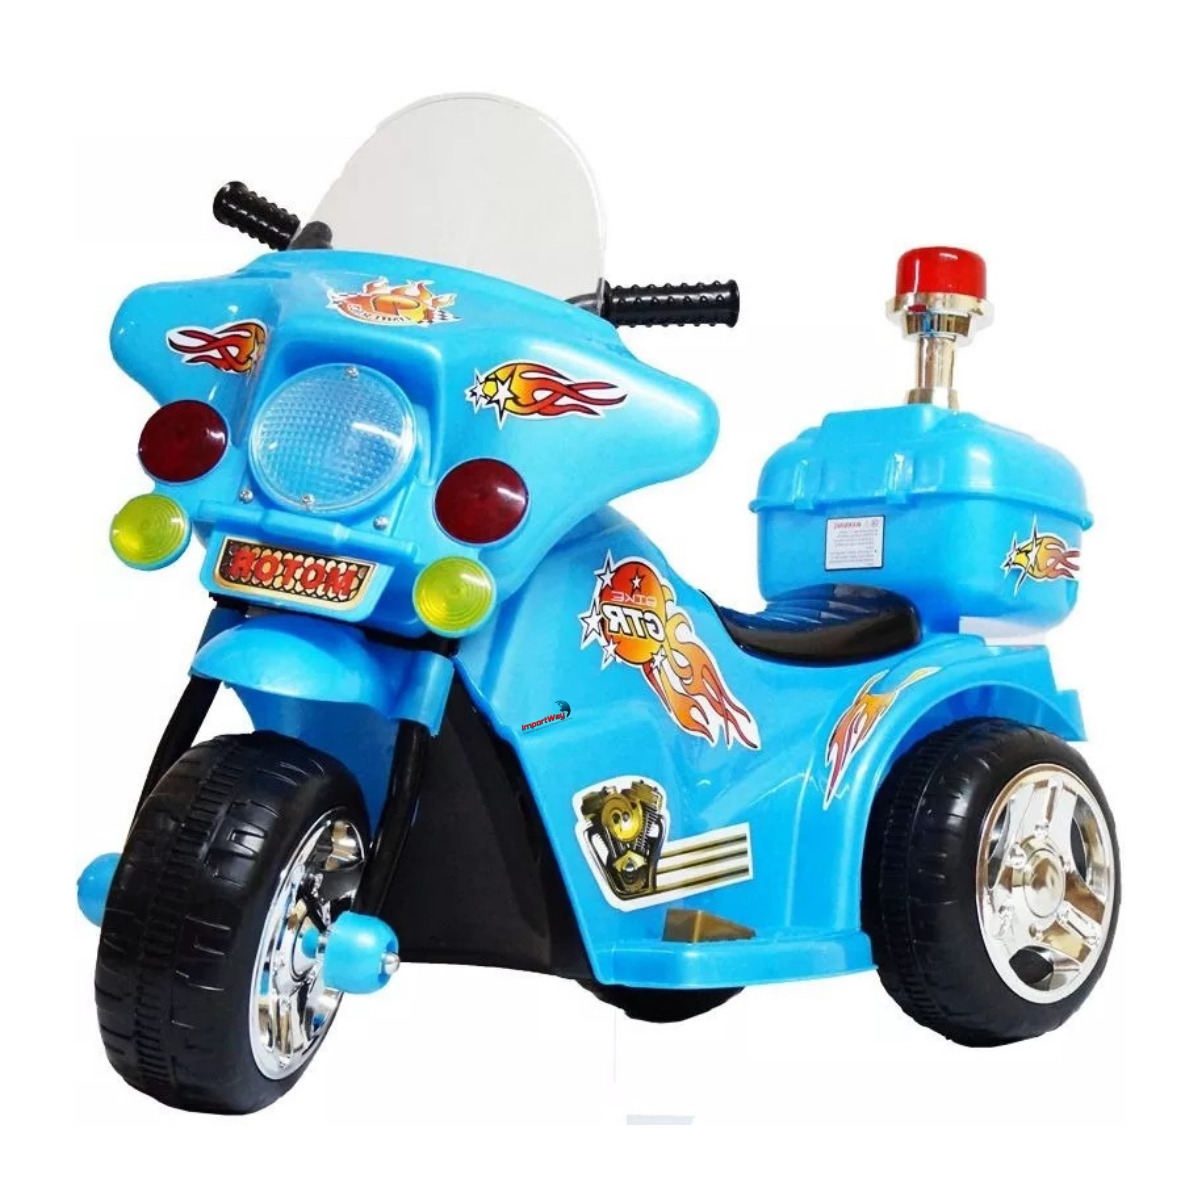 Moto Elétrica Infantil Brinquedo Lacrada Nova na caixa Criança Bike  Bicicleta - Artigos infantis - Estados, João Pessoa 1252226522